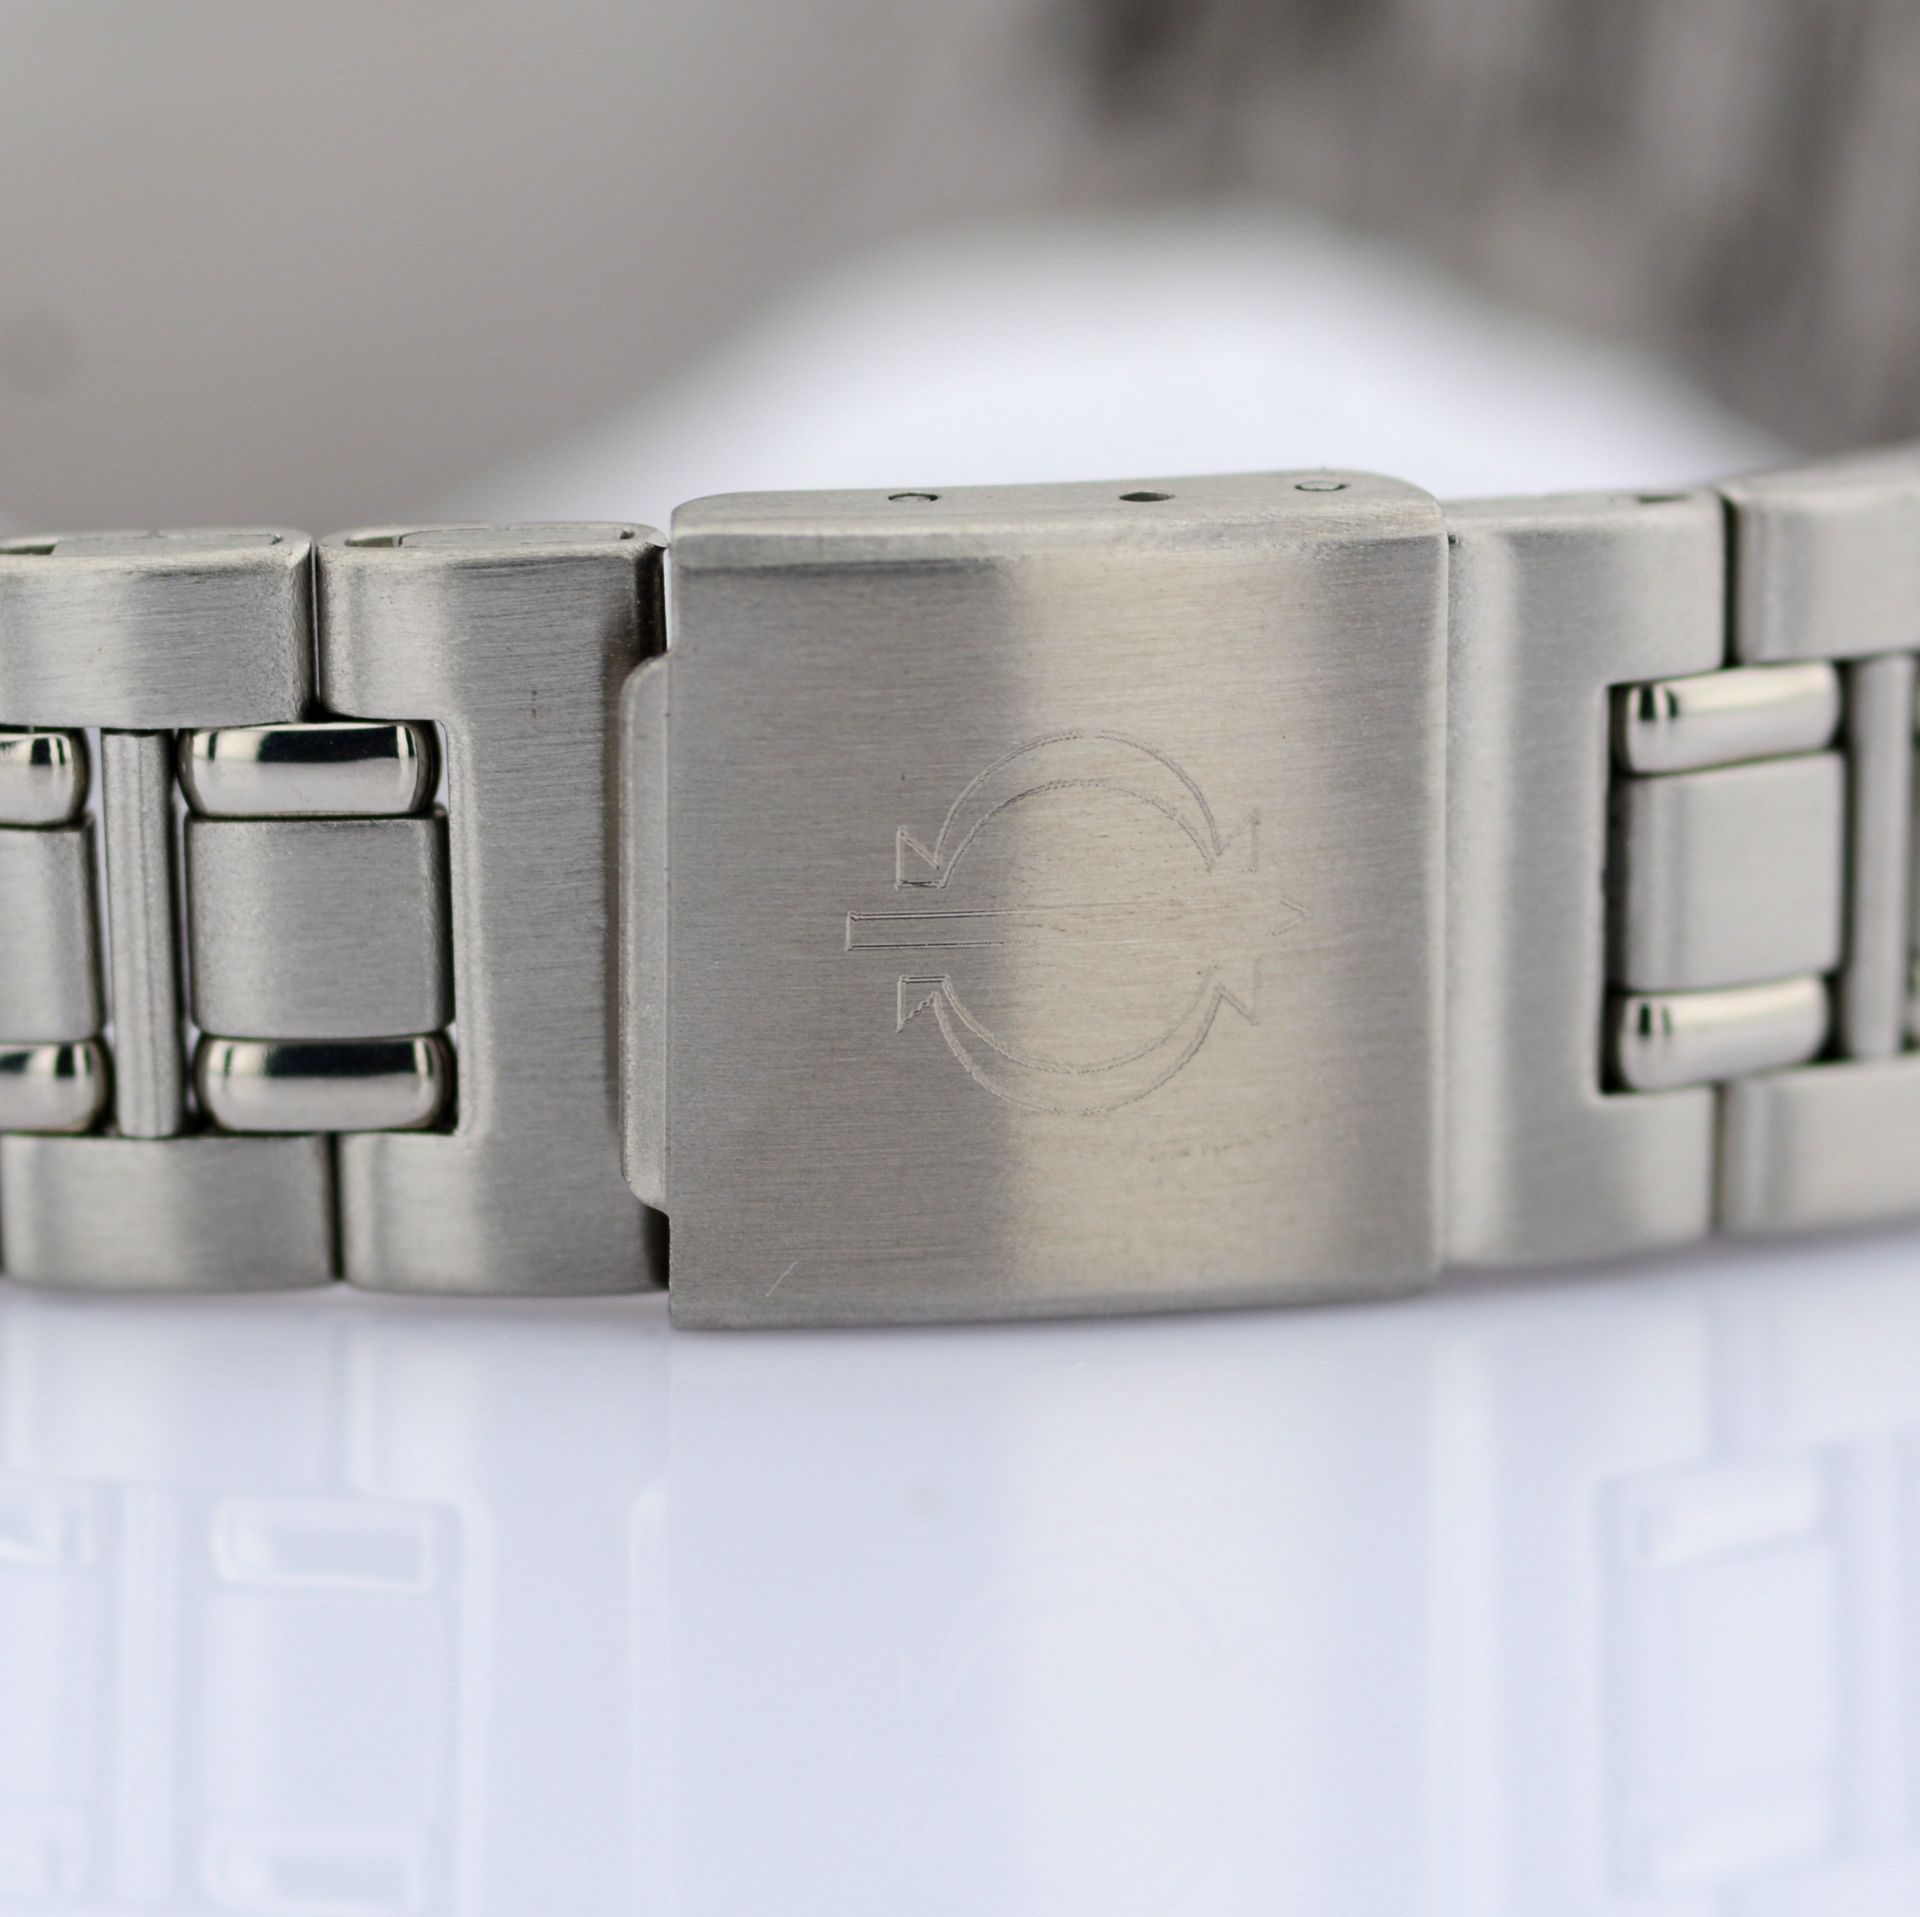 Candino / Chronograph Date - (Unworn) Gentlmen's Steel Wrist Watch - Image 7 of 7